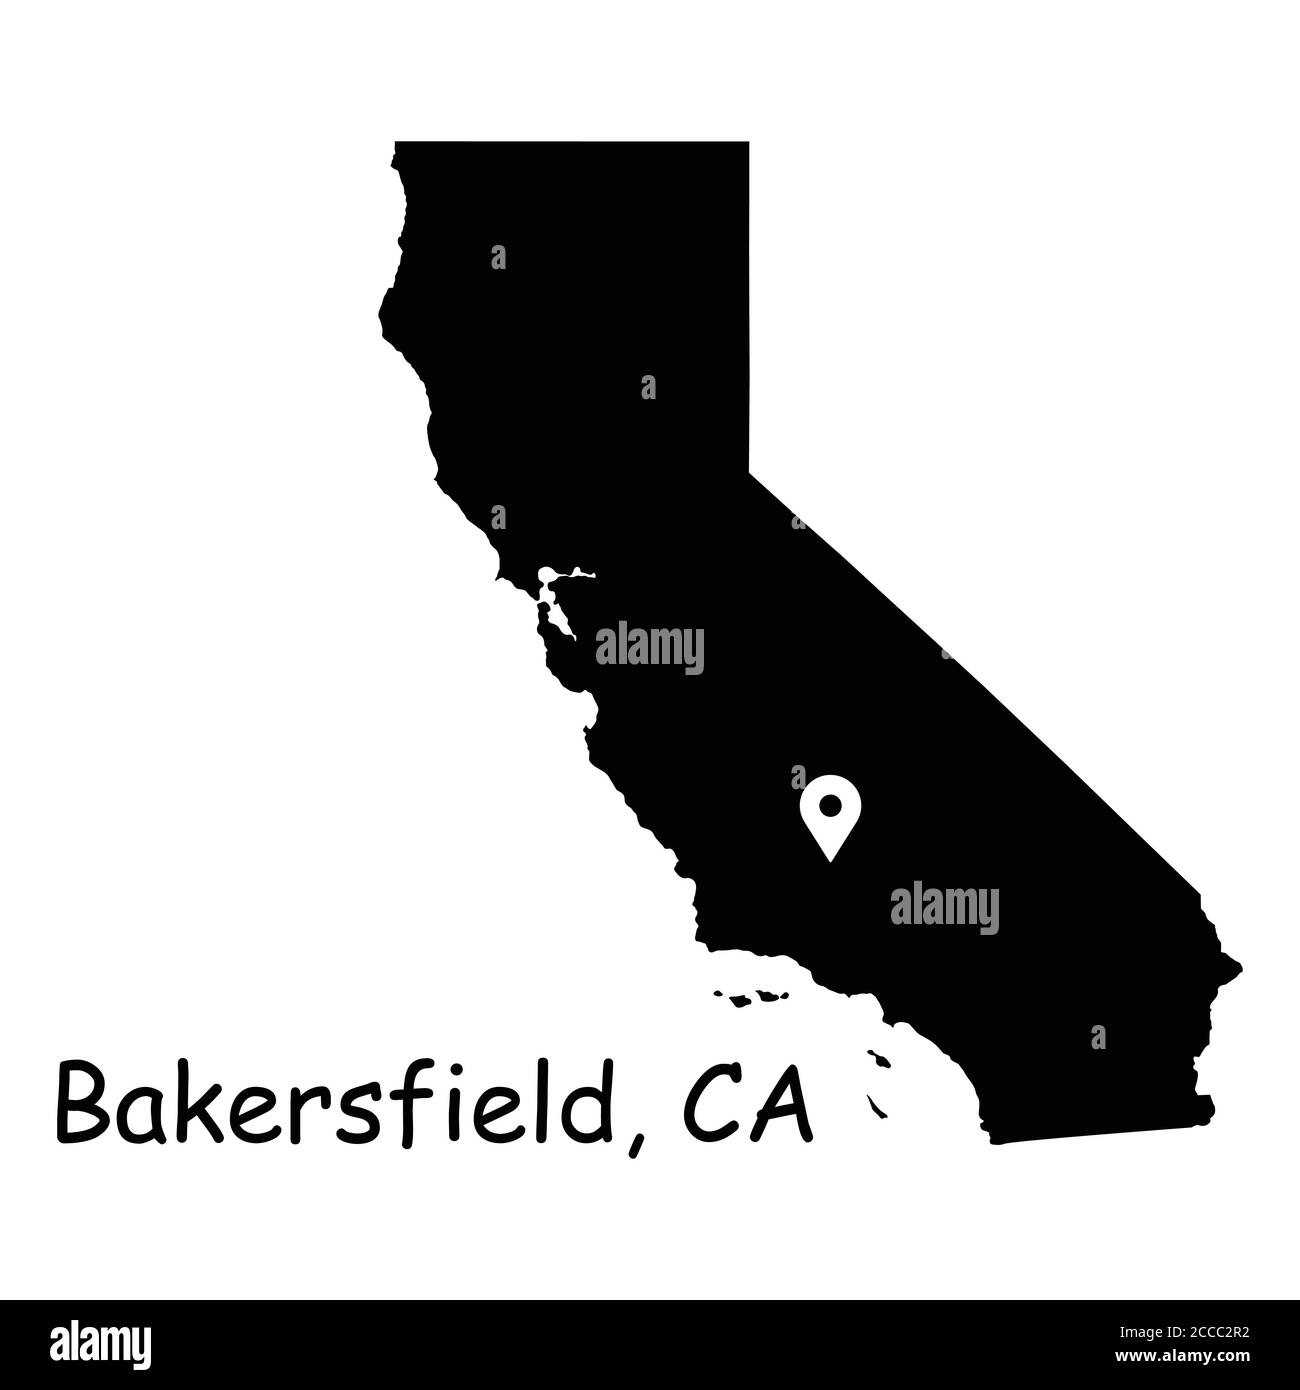 Bakersfield sulla mappa dello stato della California. Mappa dettagliata dello stato della CA con pin posizione su Bakersfield City. Mappa vettoriale silhouette nera isolata su sfondo bianco Illustrazione Vettoriale